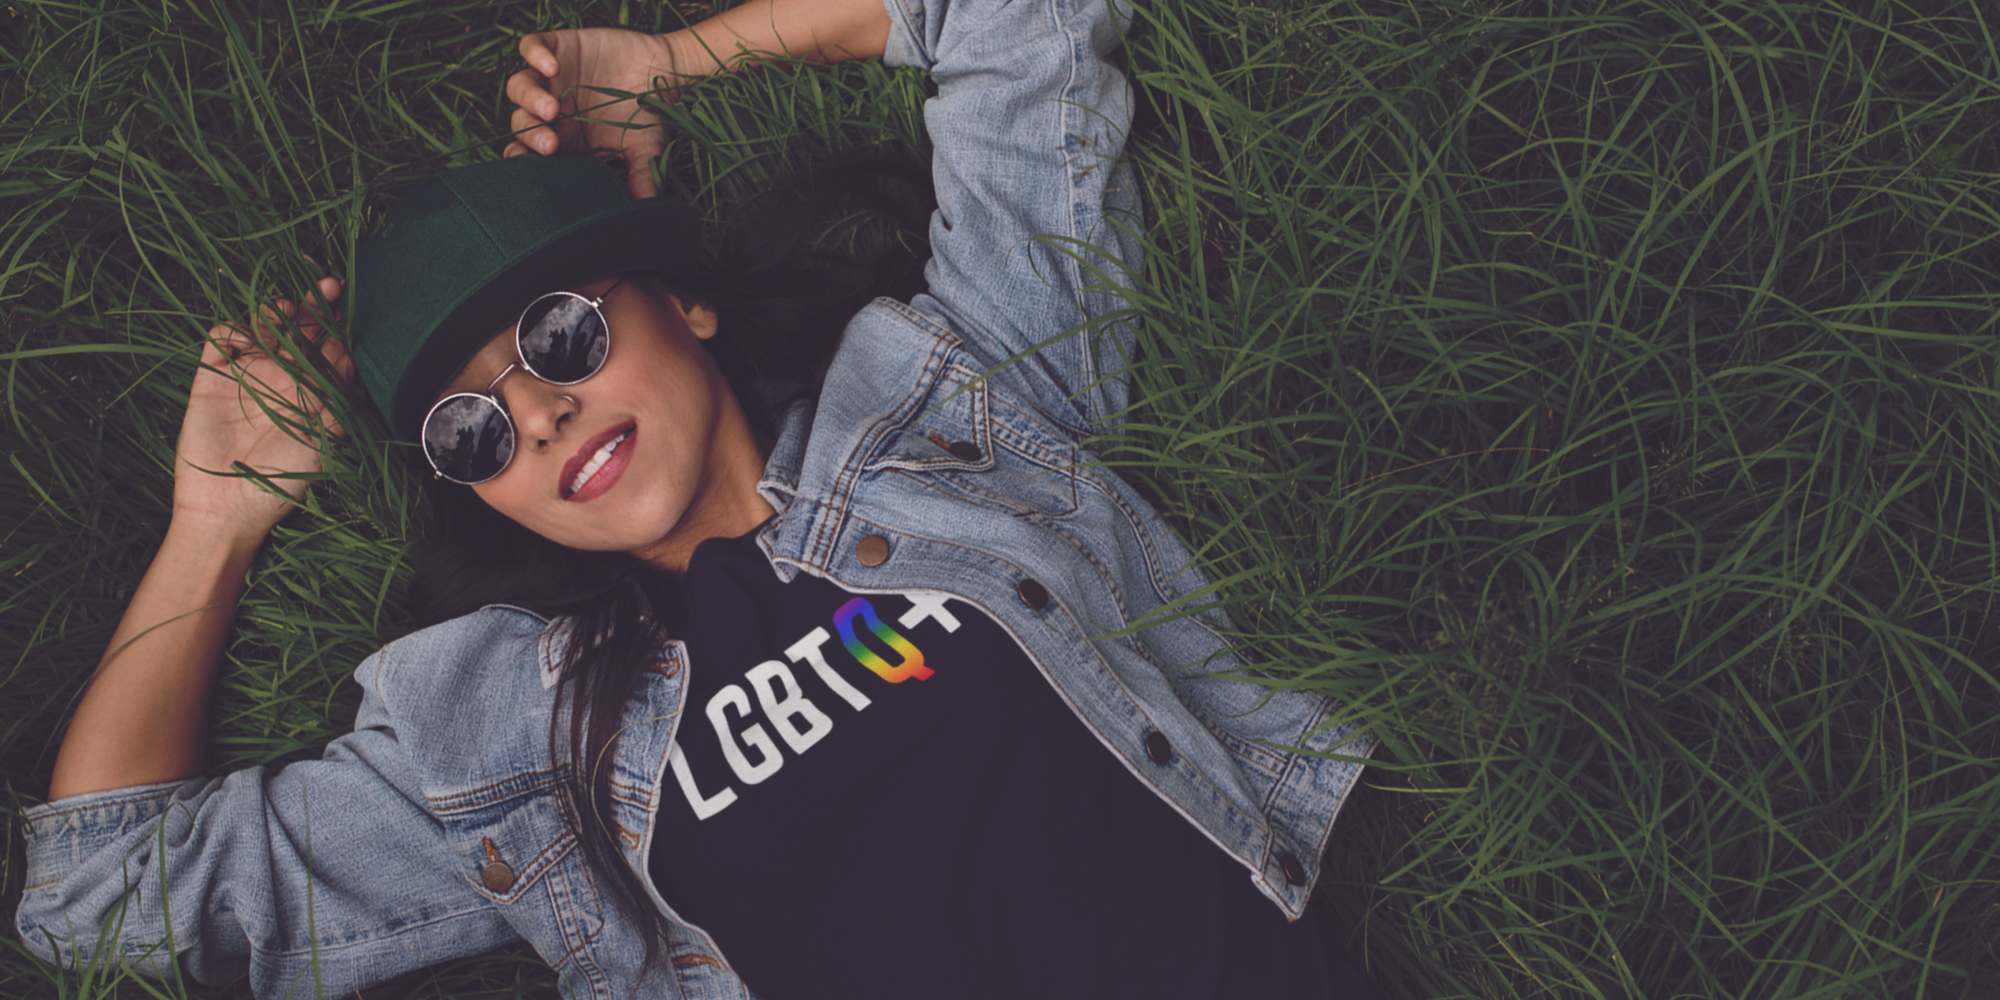 Woman Lying on ground wearing LGBTQ+ T-shirt